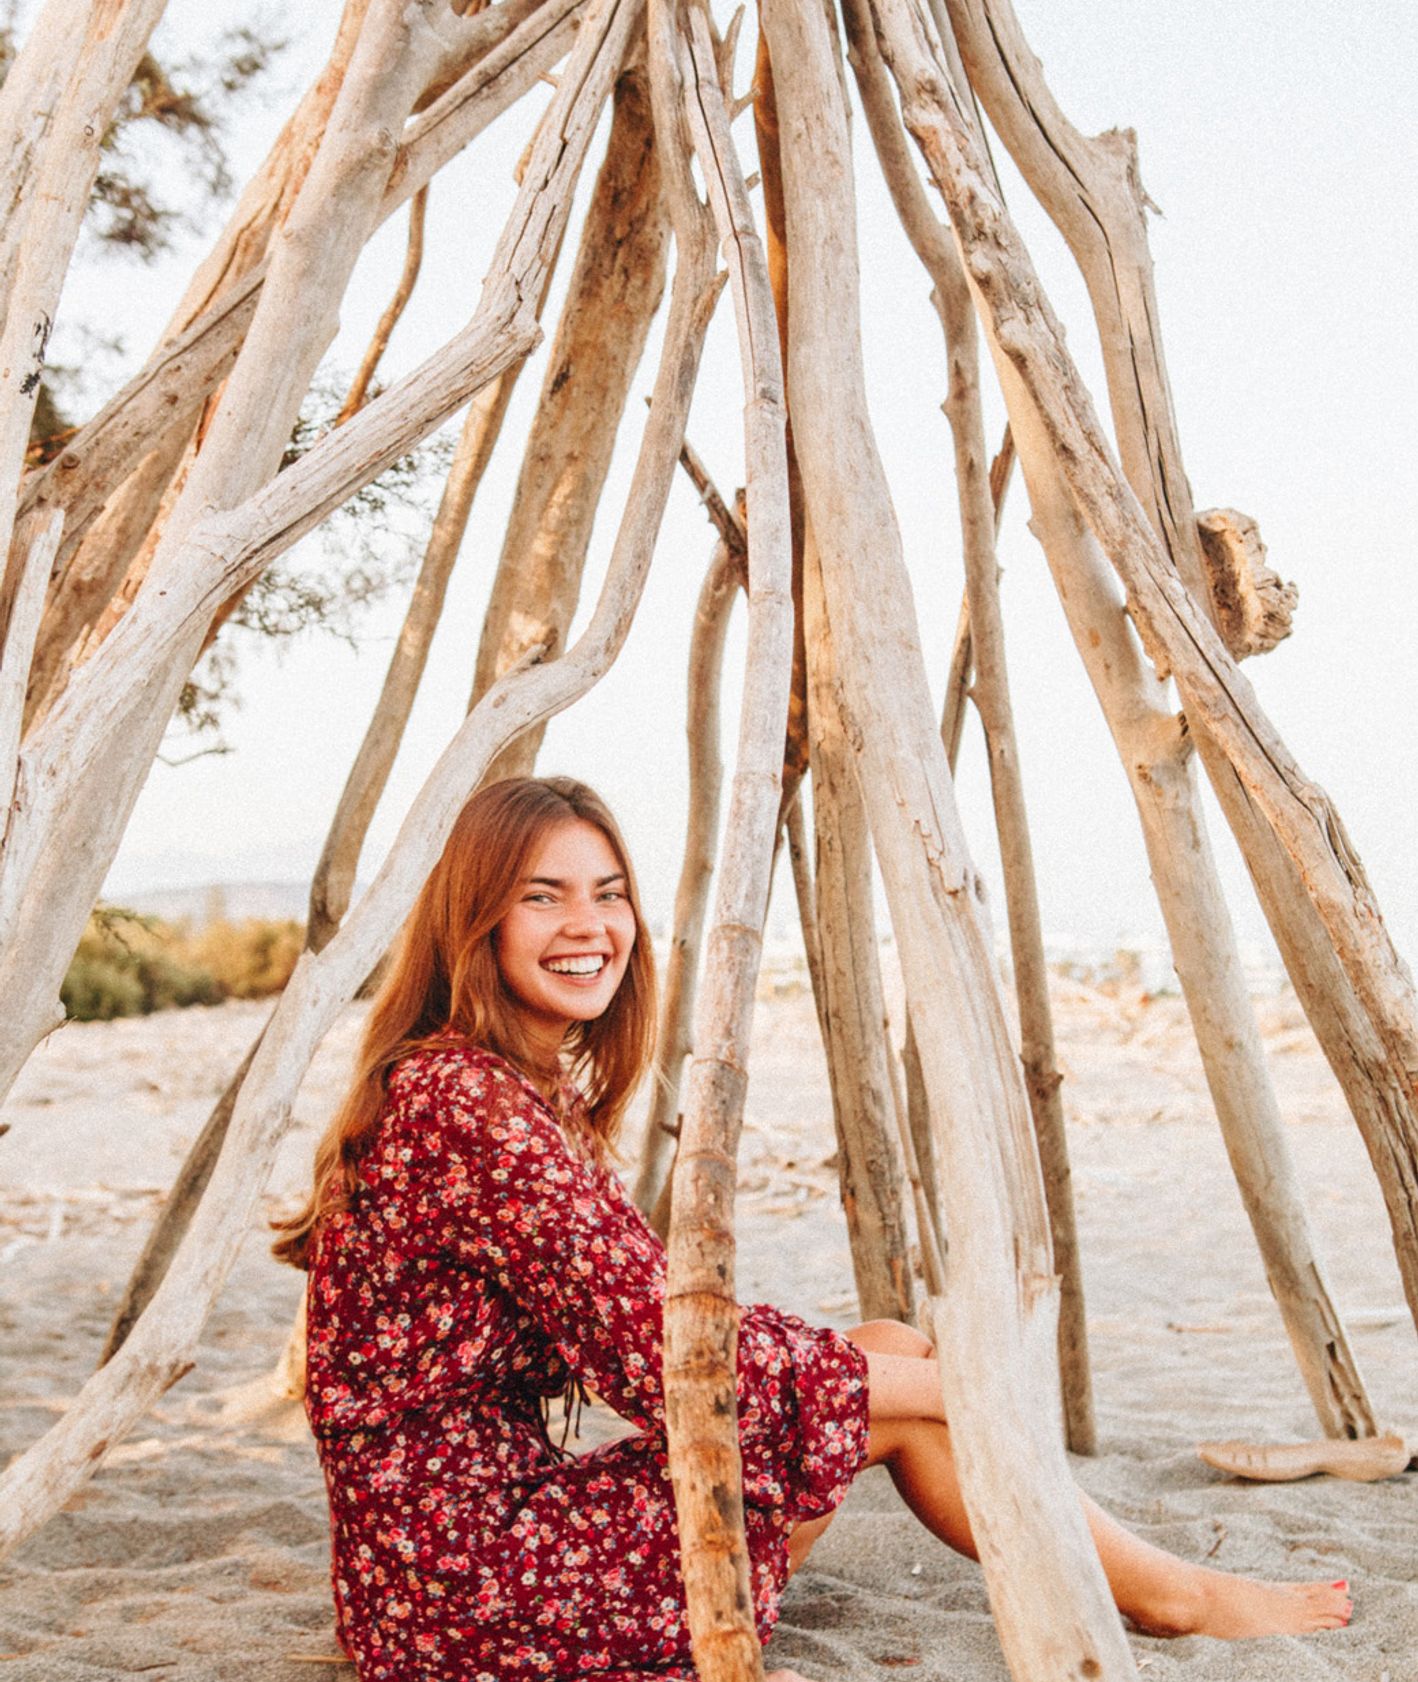 Uśmiechnięta kobieta siedząca pod konstrukcją z gałęzi na plaży. (fot. Sonnie Hiles / unsplash.com)